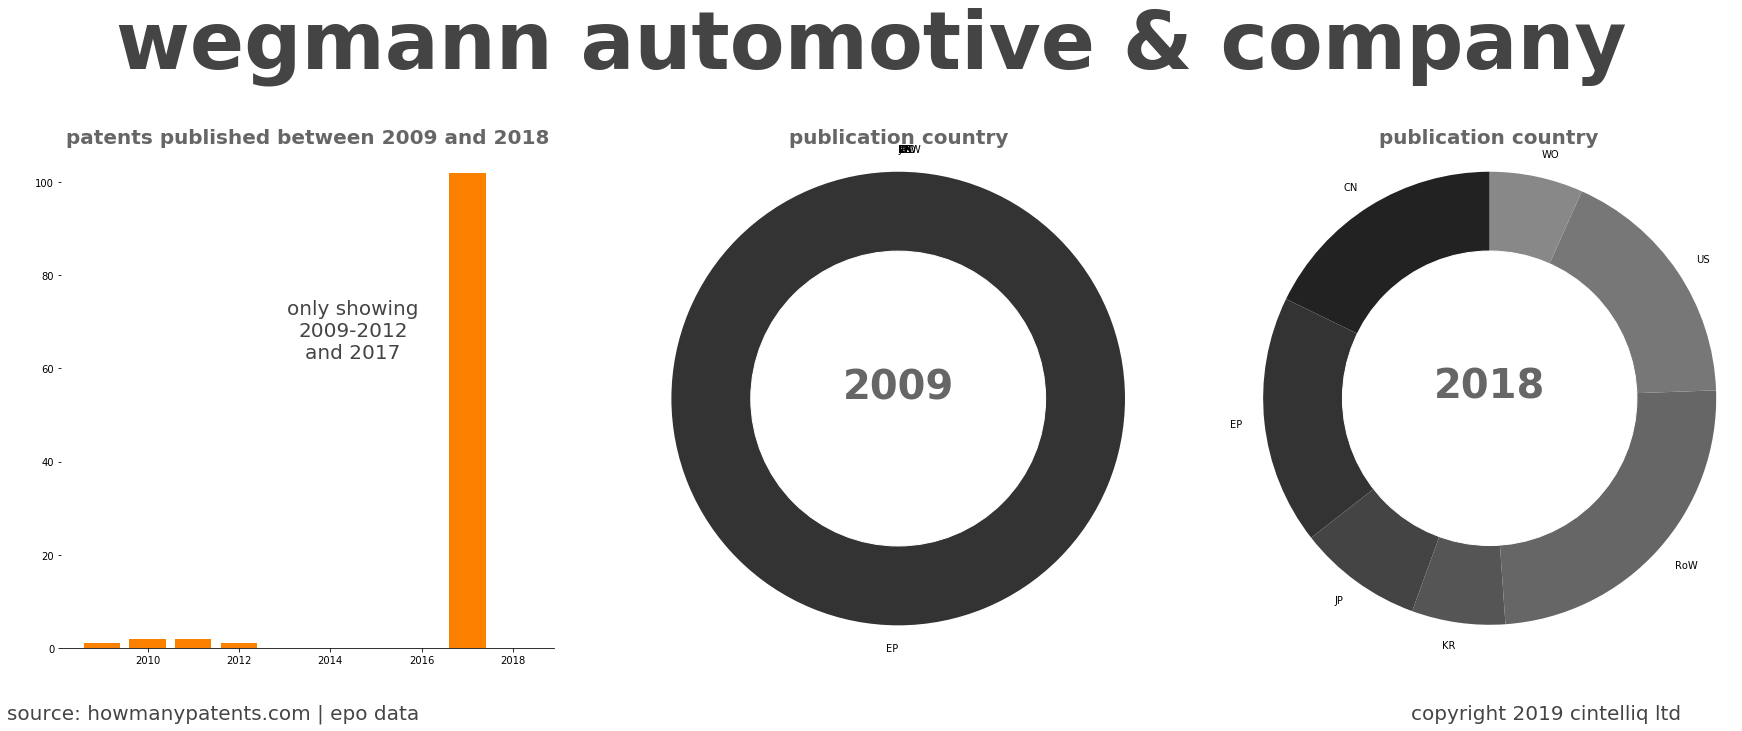 summary of patents for Wegmann Automotive & Company